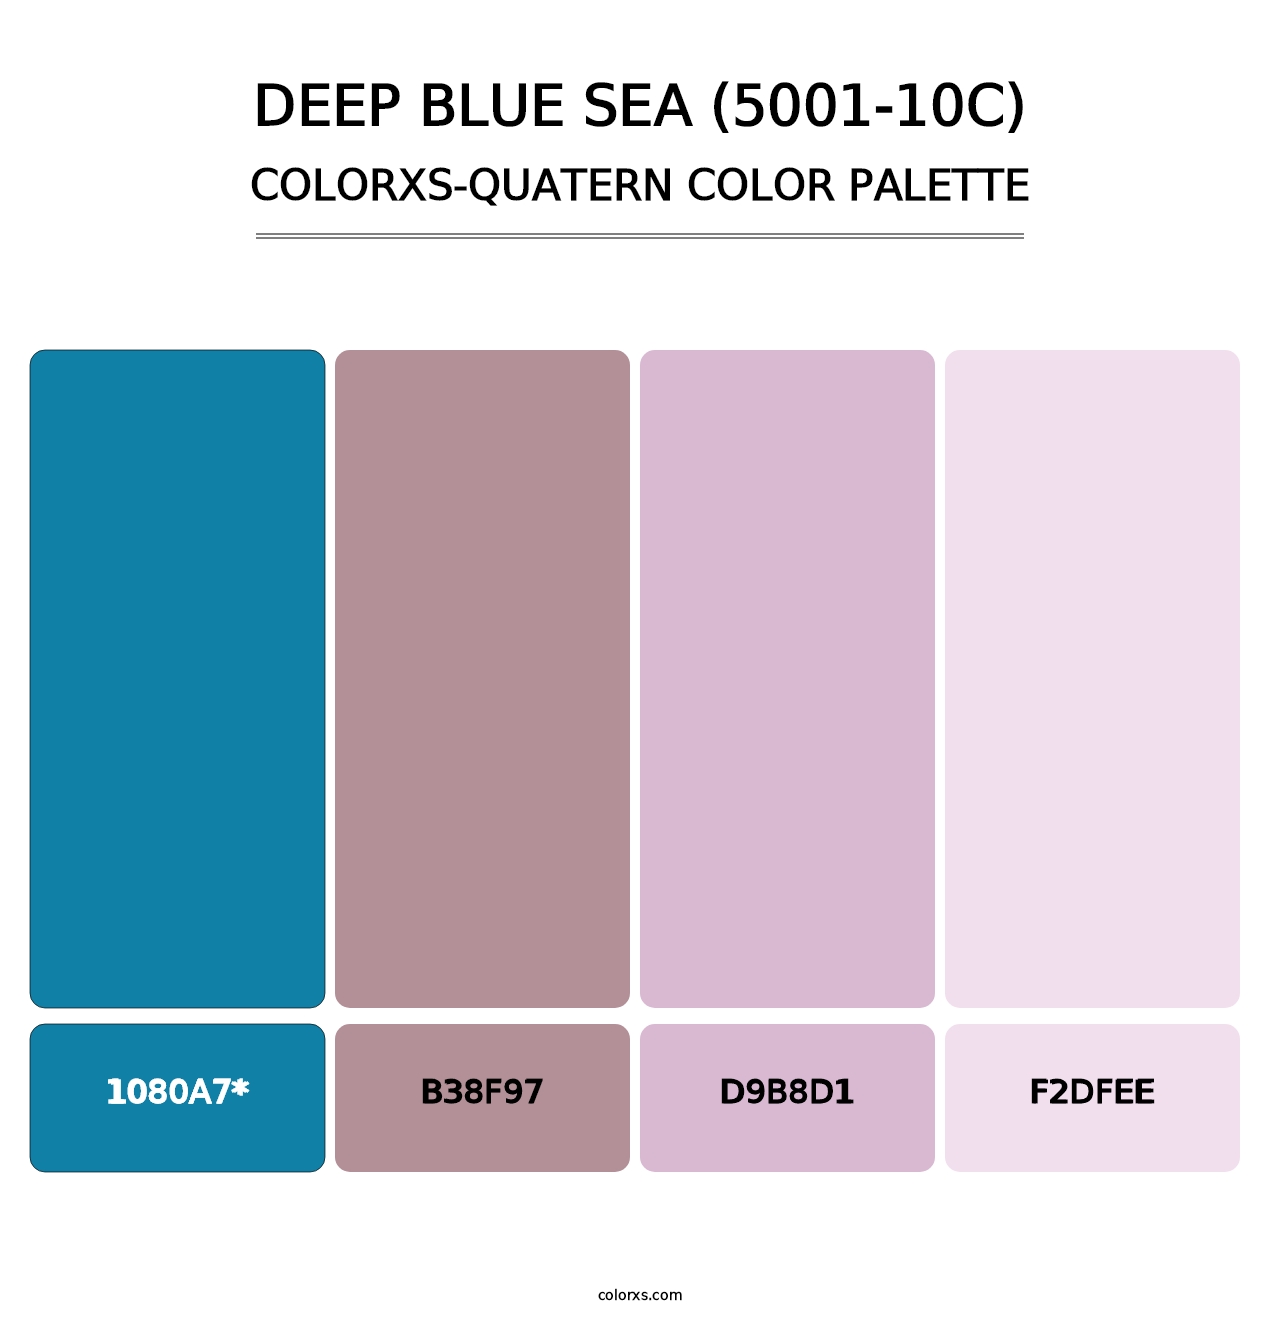 Deep Blue Sea (5001-10C) - Colorxs Quatern Palette